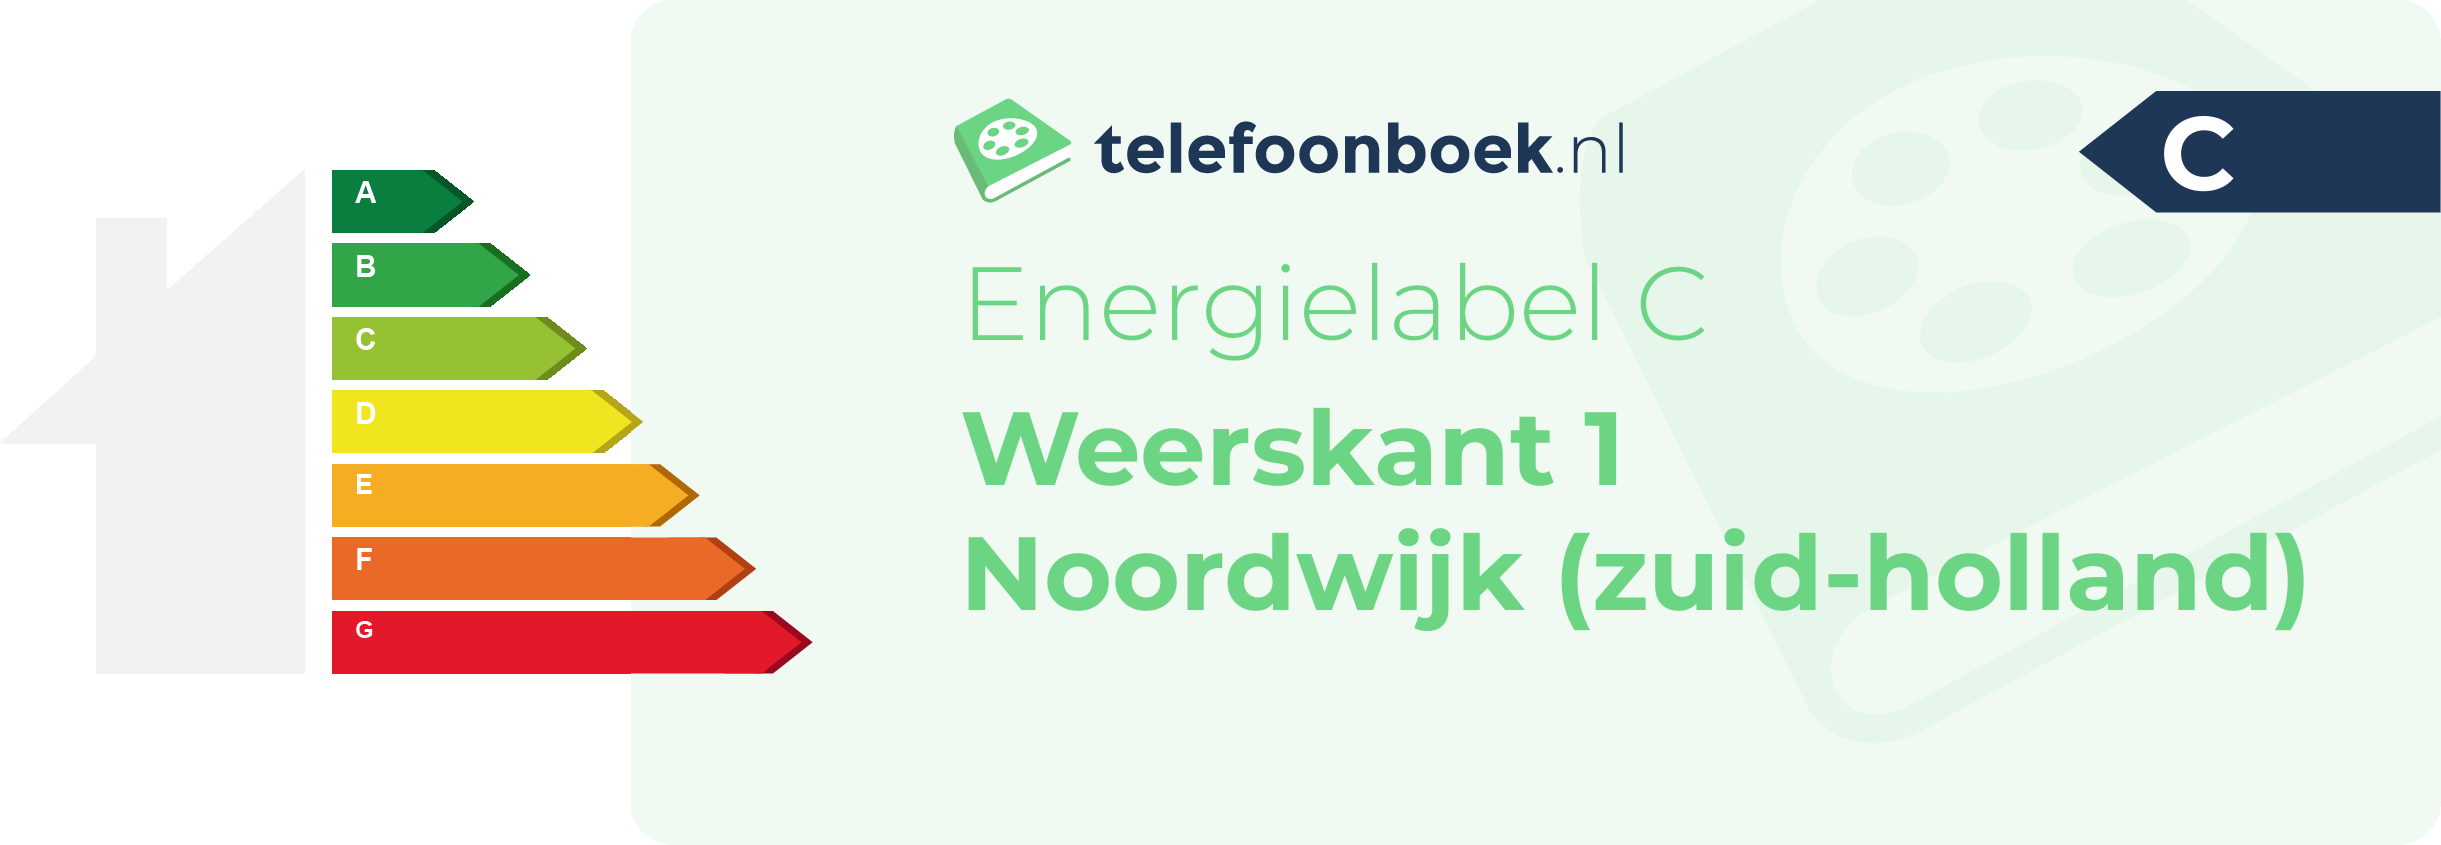 Energielabel Weerskant 1 Noordwijk (Zuid-Holland)